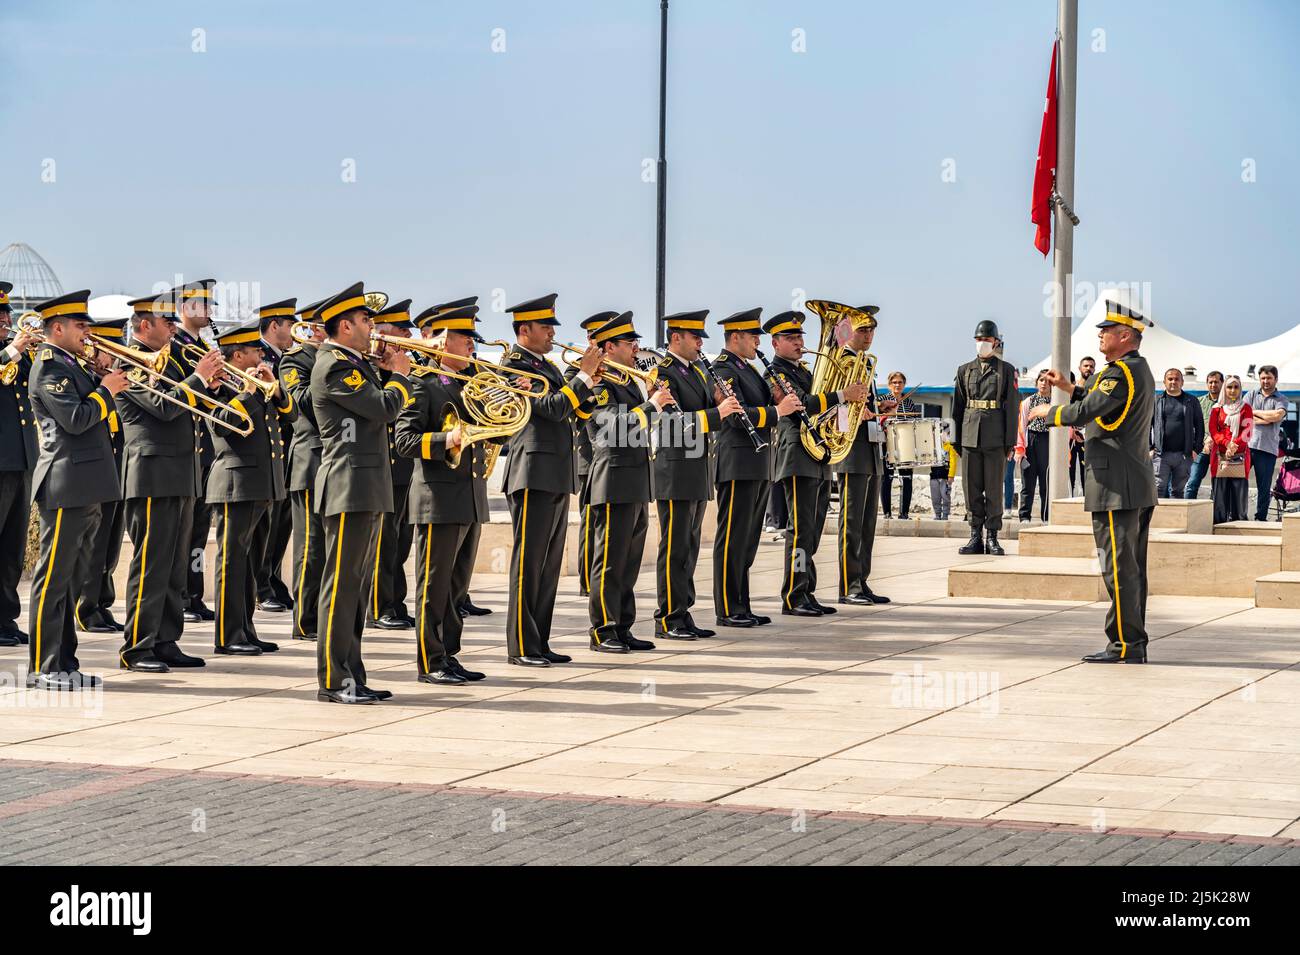 Militärkapelle türkischer Soldaten am Denkmal  von Kemal Atatürk an der Promenade in Kyrenia oder Girne, Türkische Republik Nordzypern, Europa  |  Tur Stock Photo